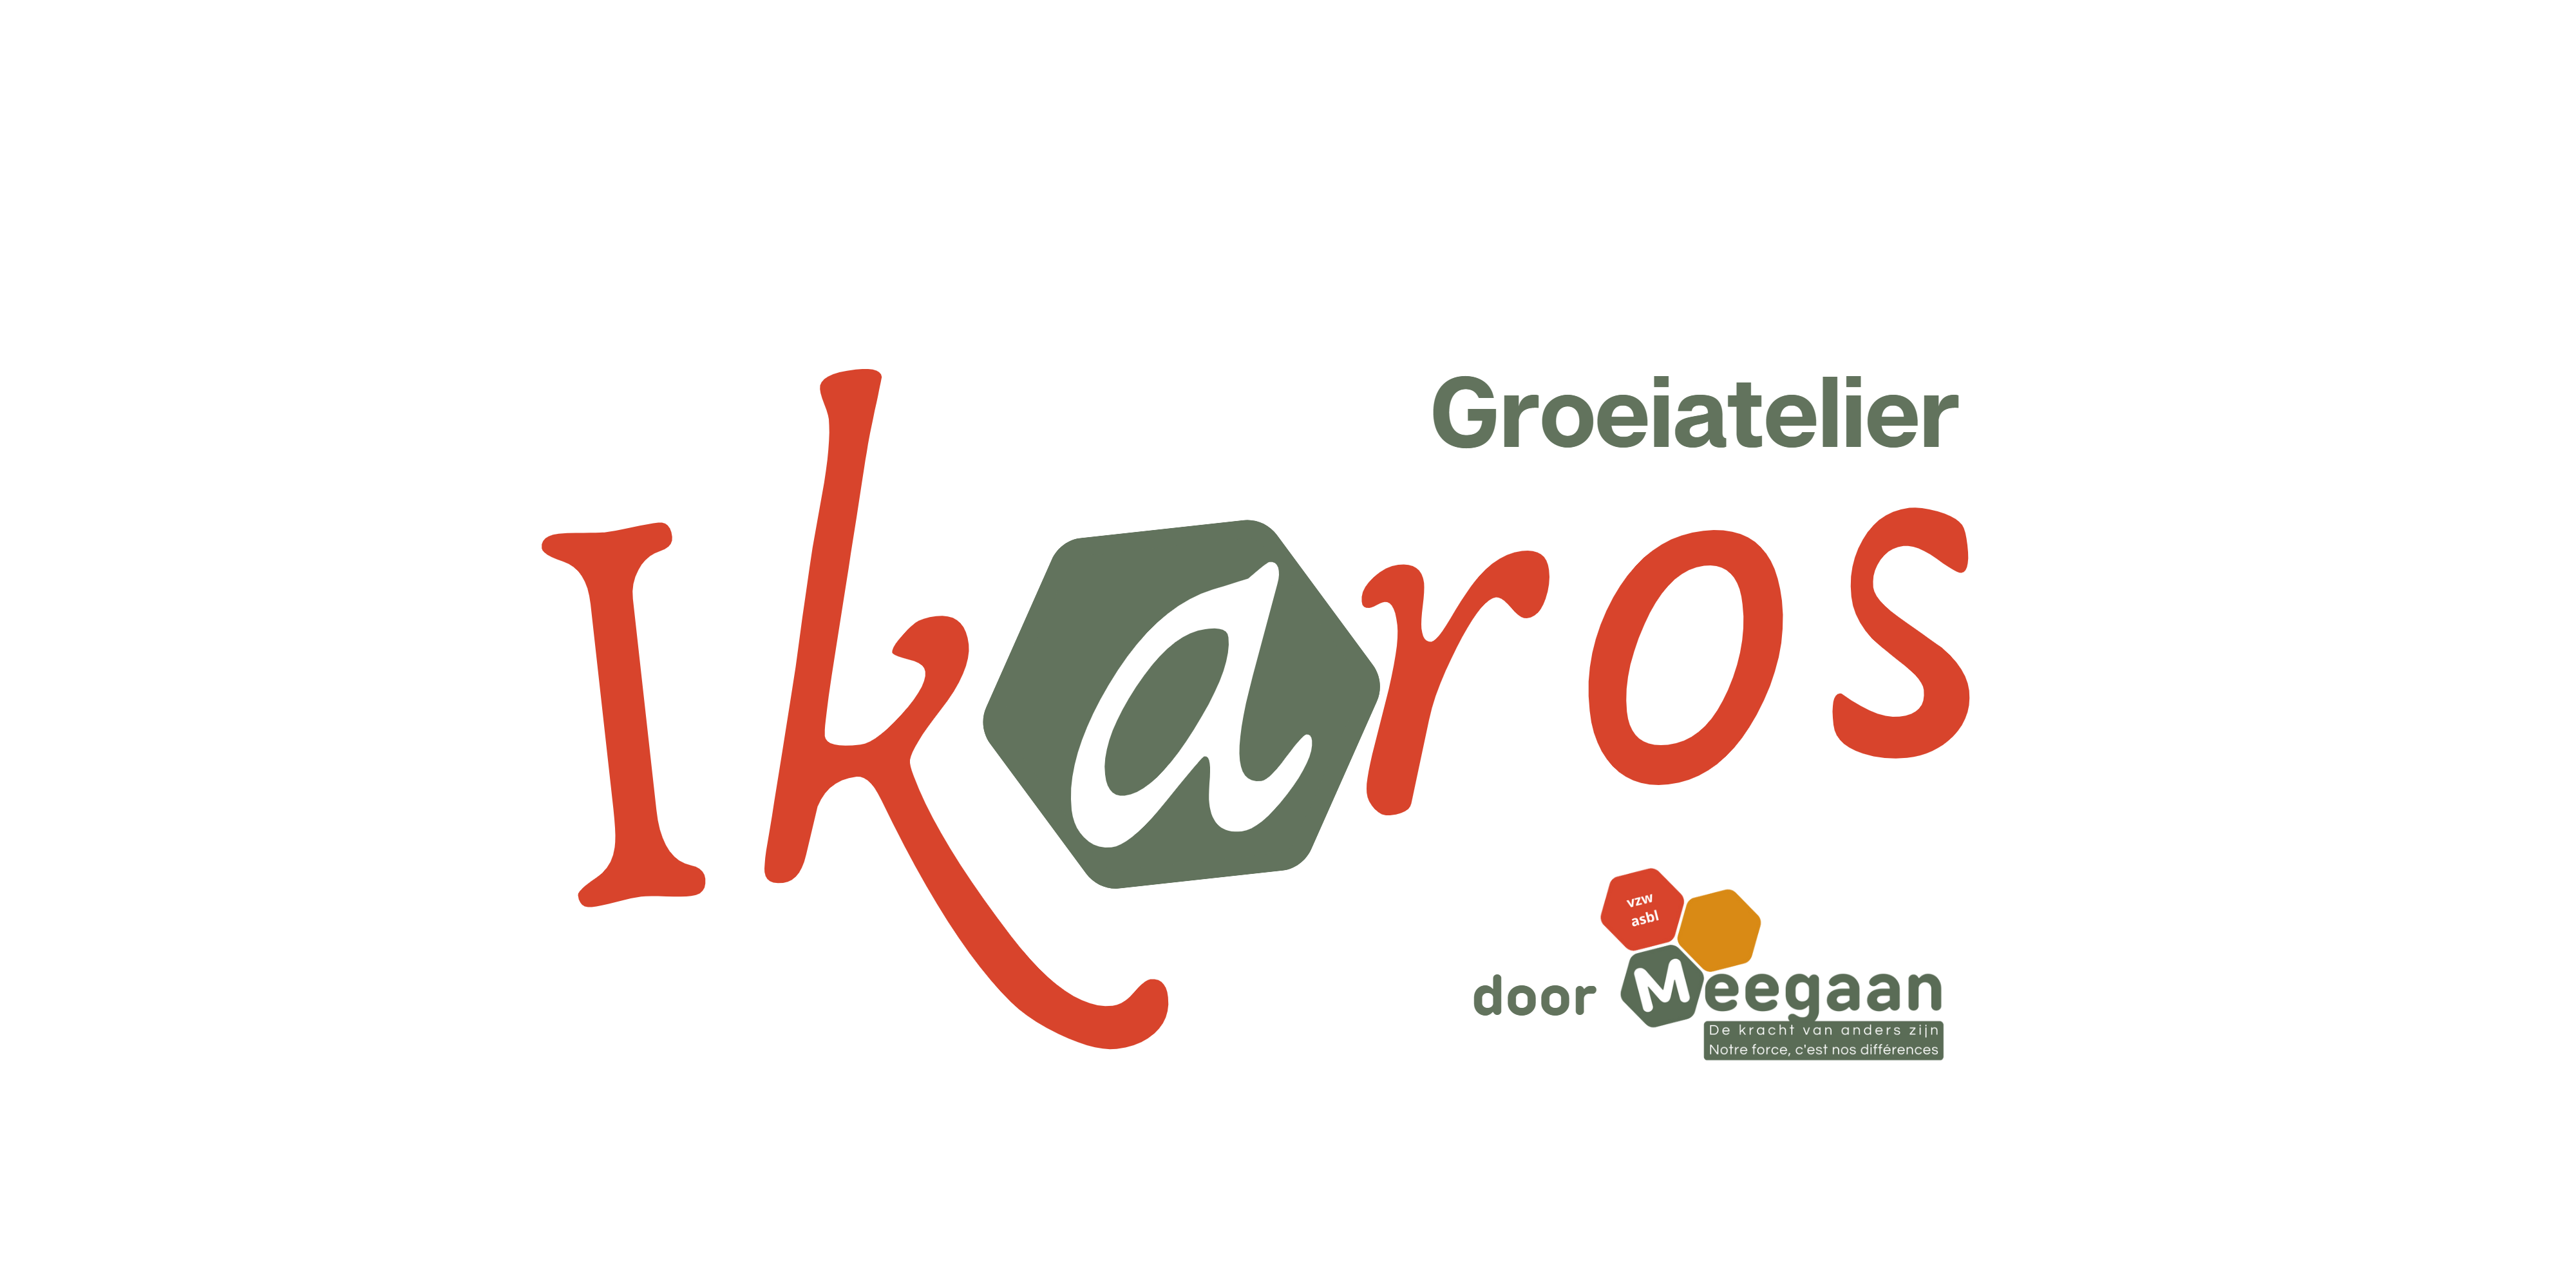 ikaros logo 2023 nl (4000 x 2000 px)